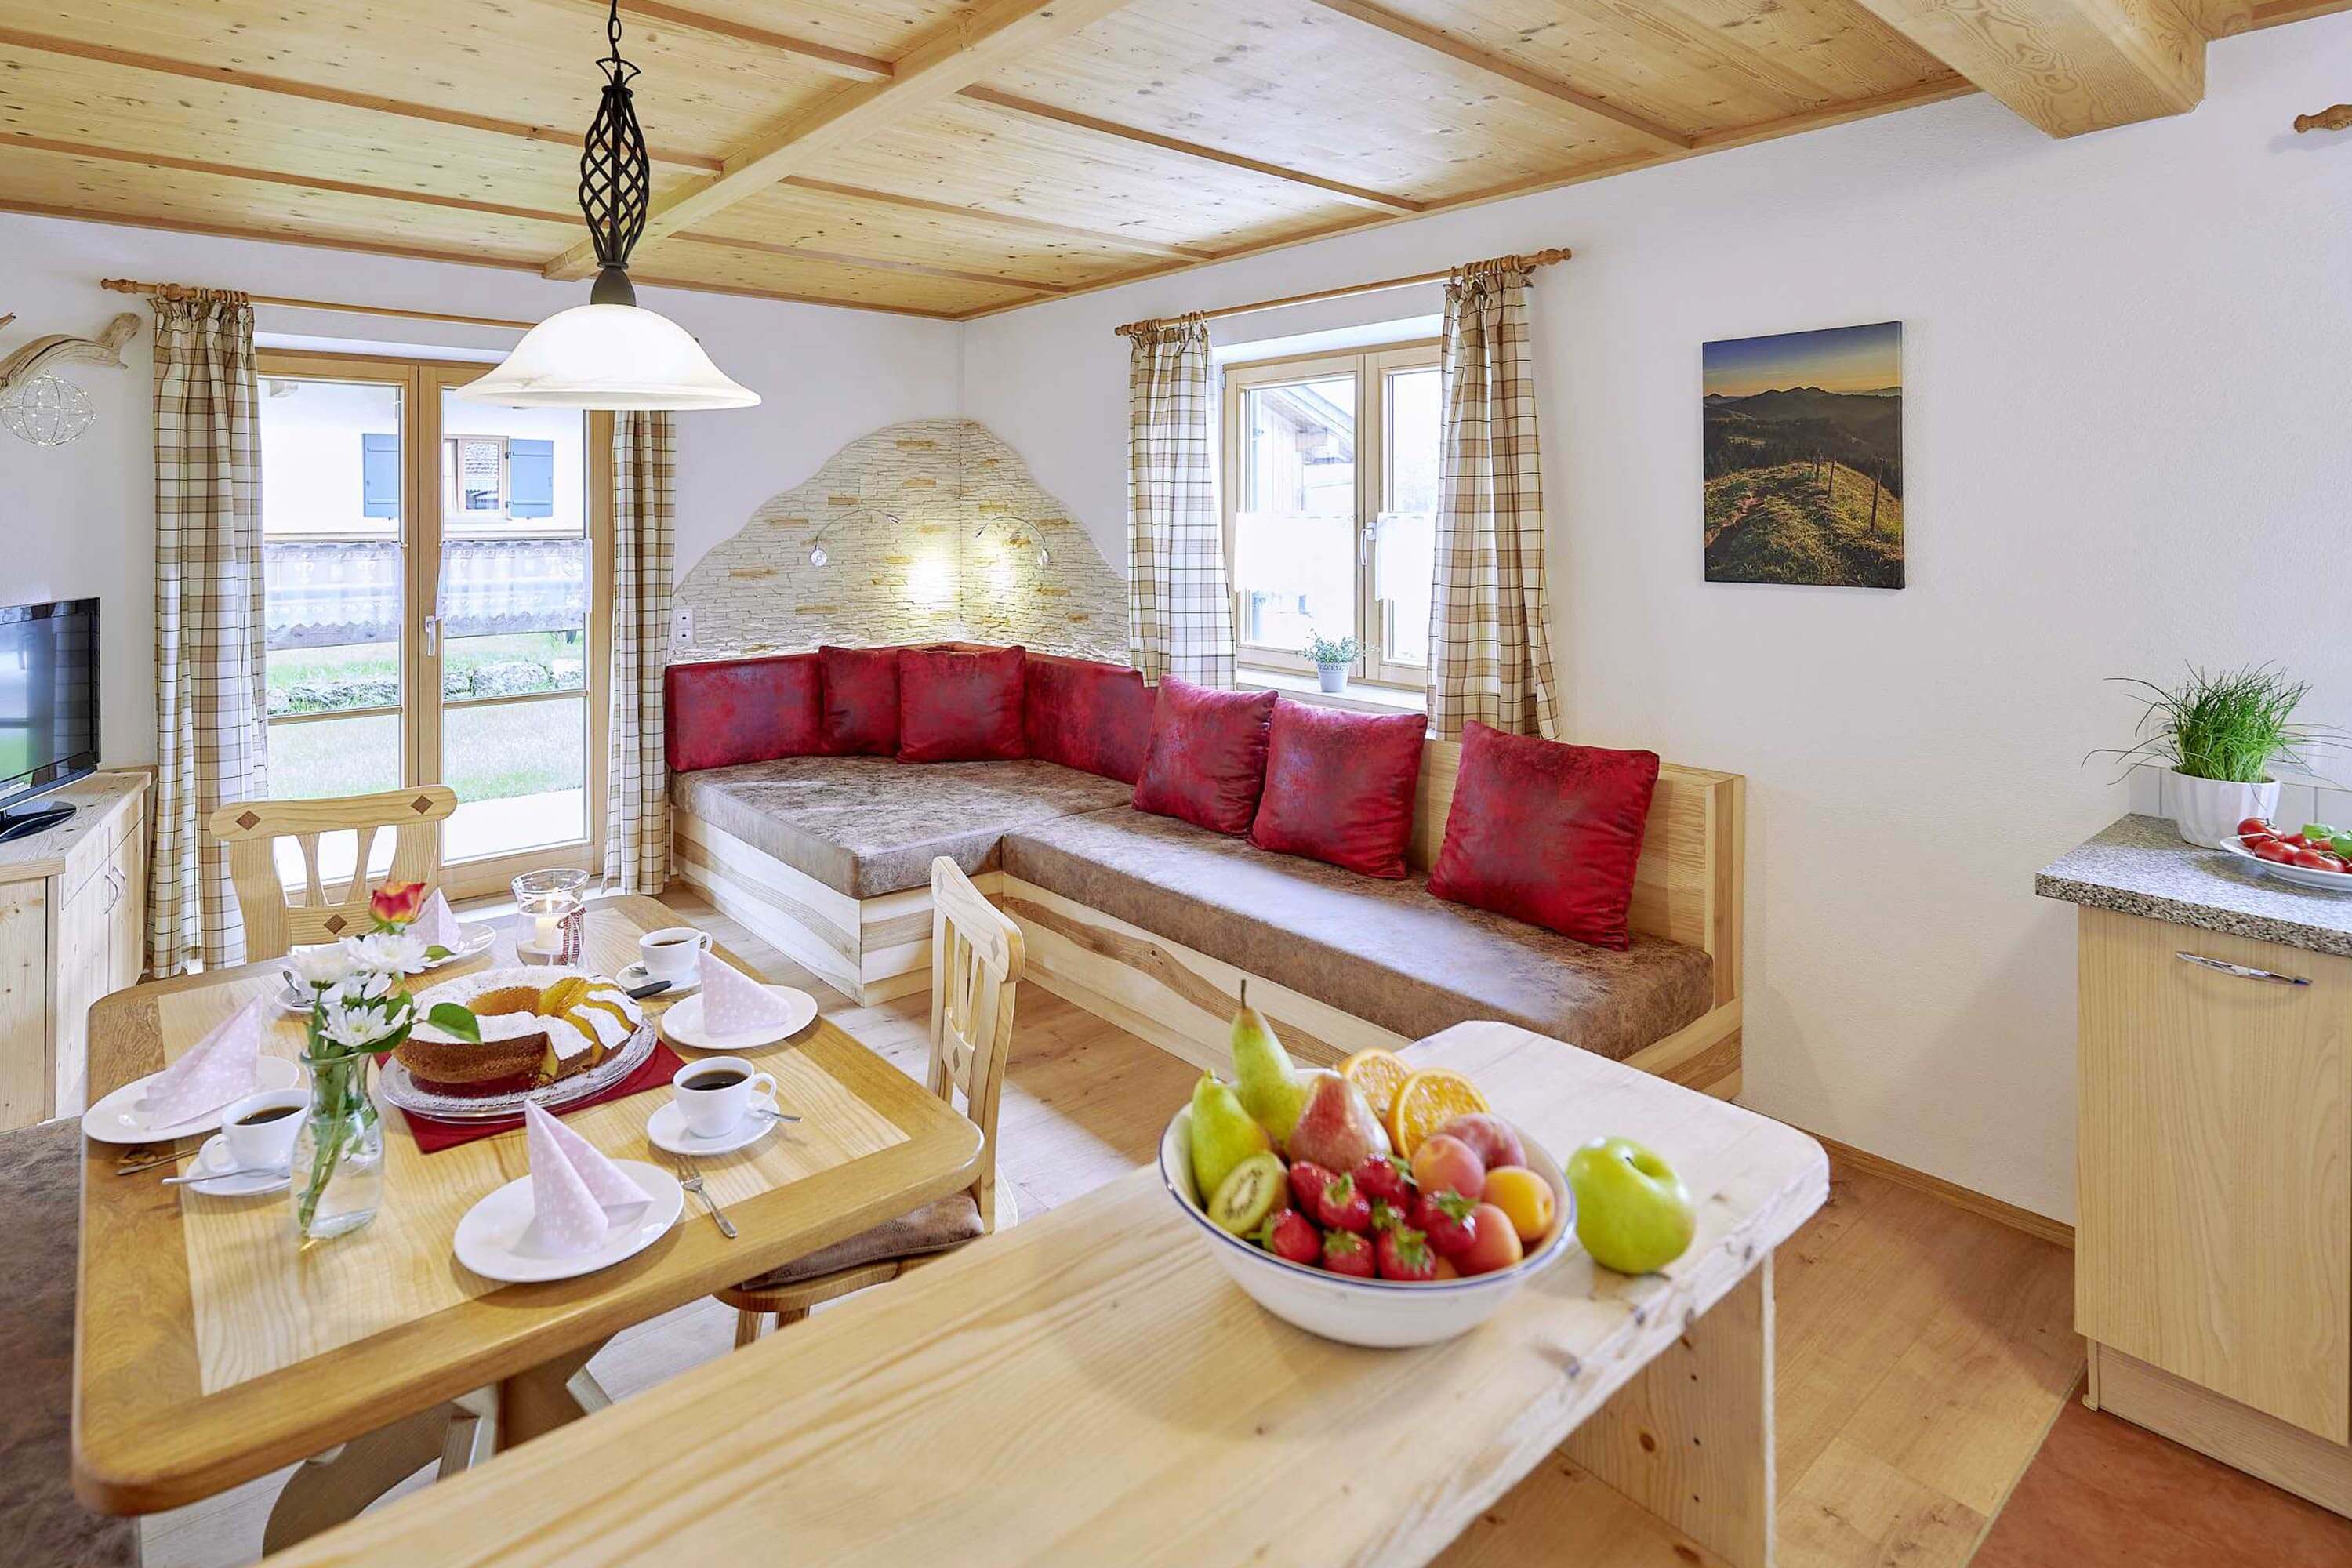 Komfortabel und gemütlich wohnen im alpenländischen Flair